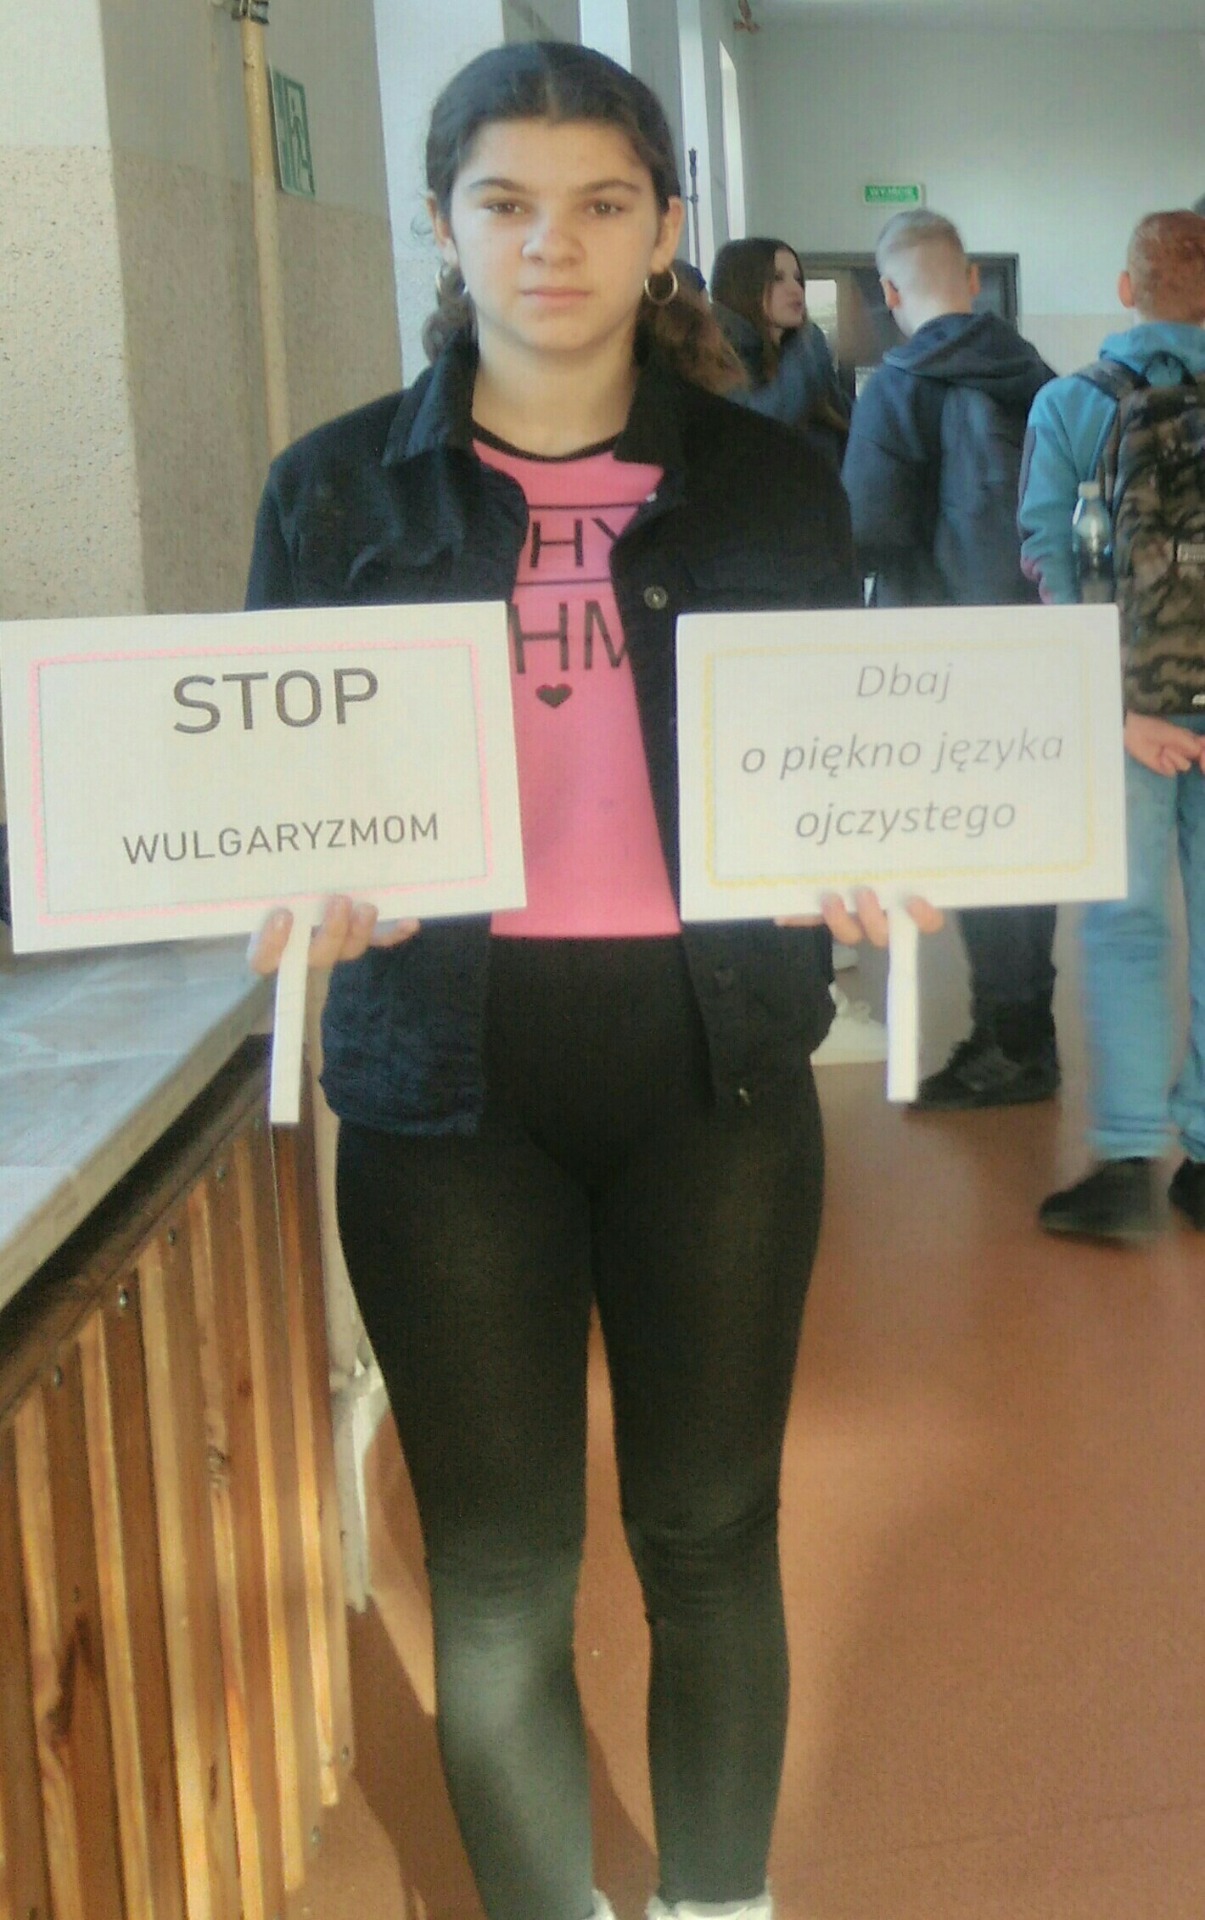 Uczennica klasy VII trzyma tabliczki z napisami: Stop wulgaryzmom i  Dbaj o piękno języka ojczystego.